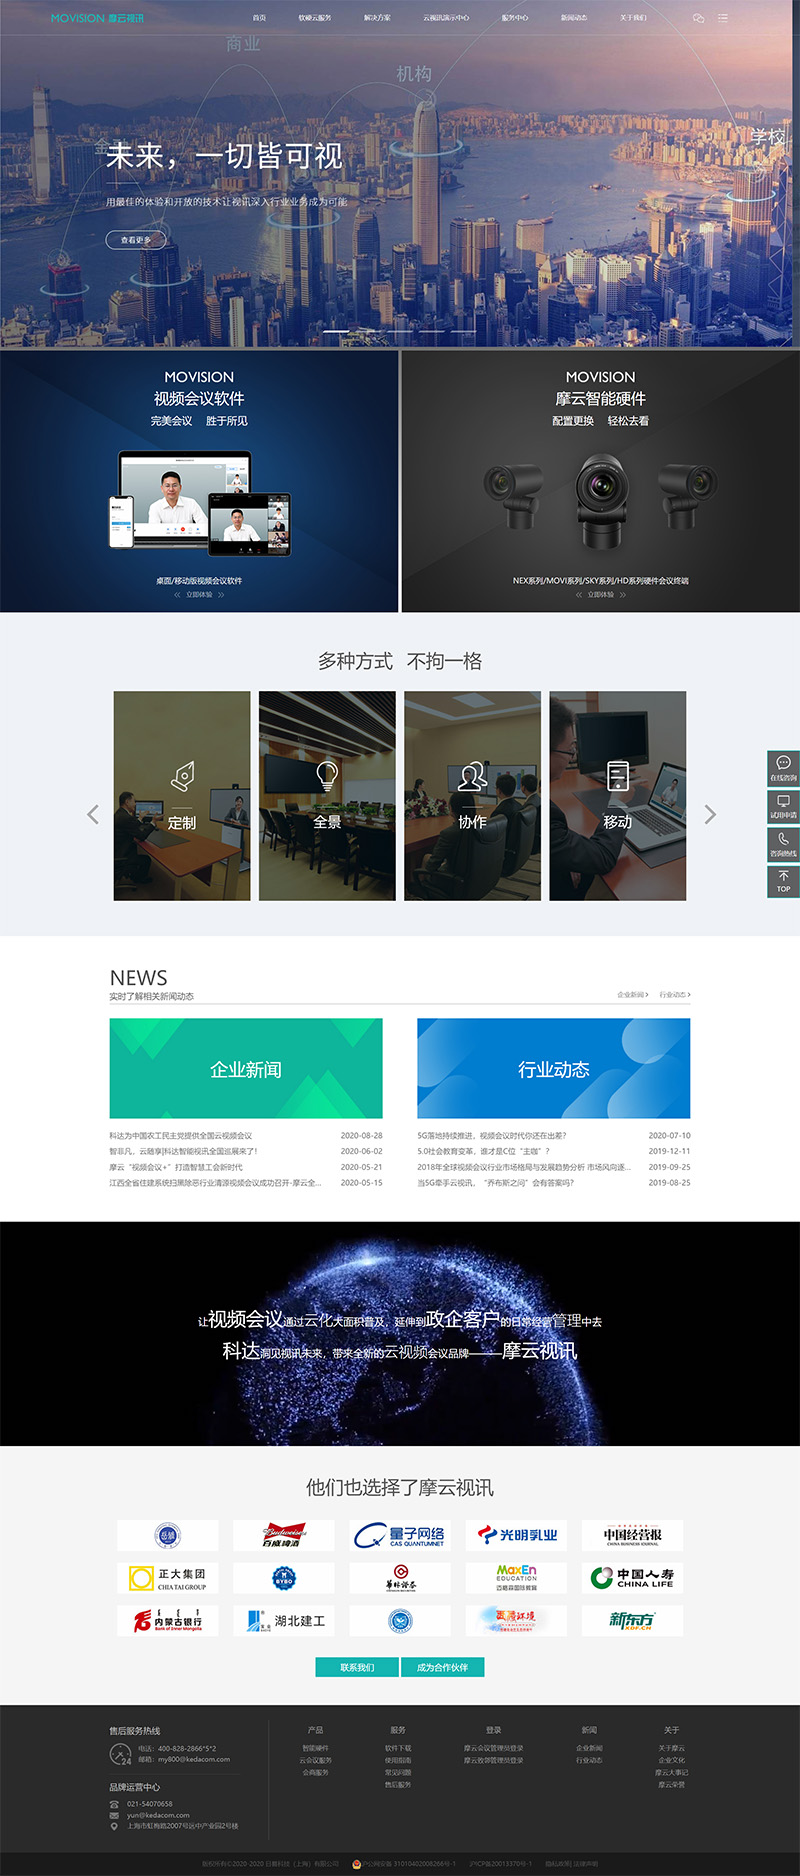 苏州网站设计案例，摩云视讯品牌网站案例展示